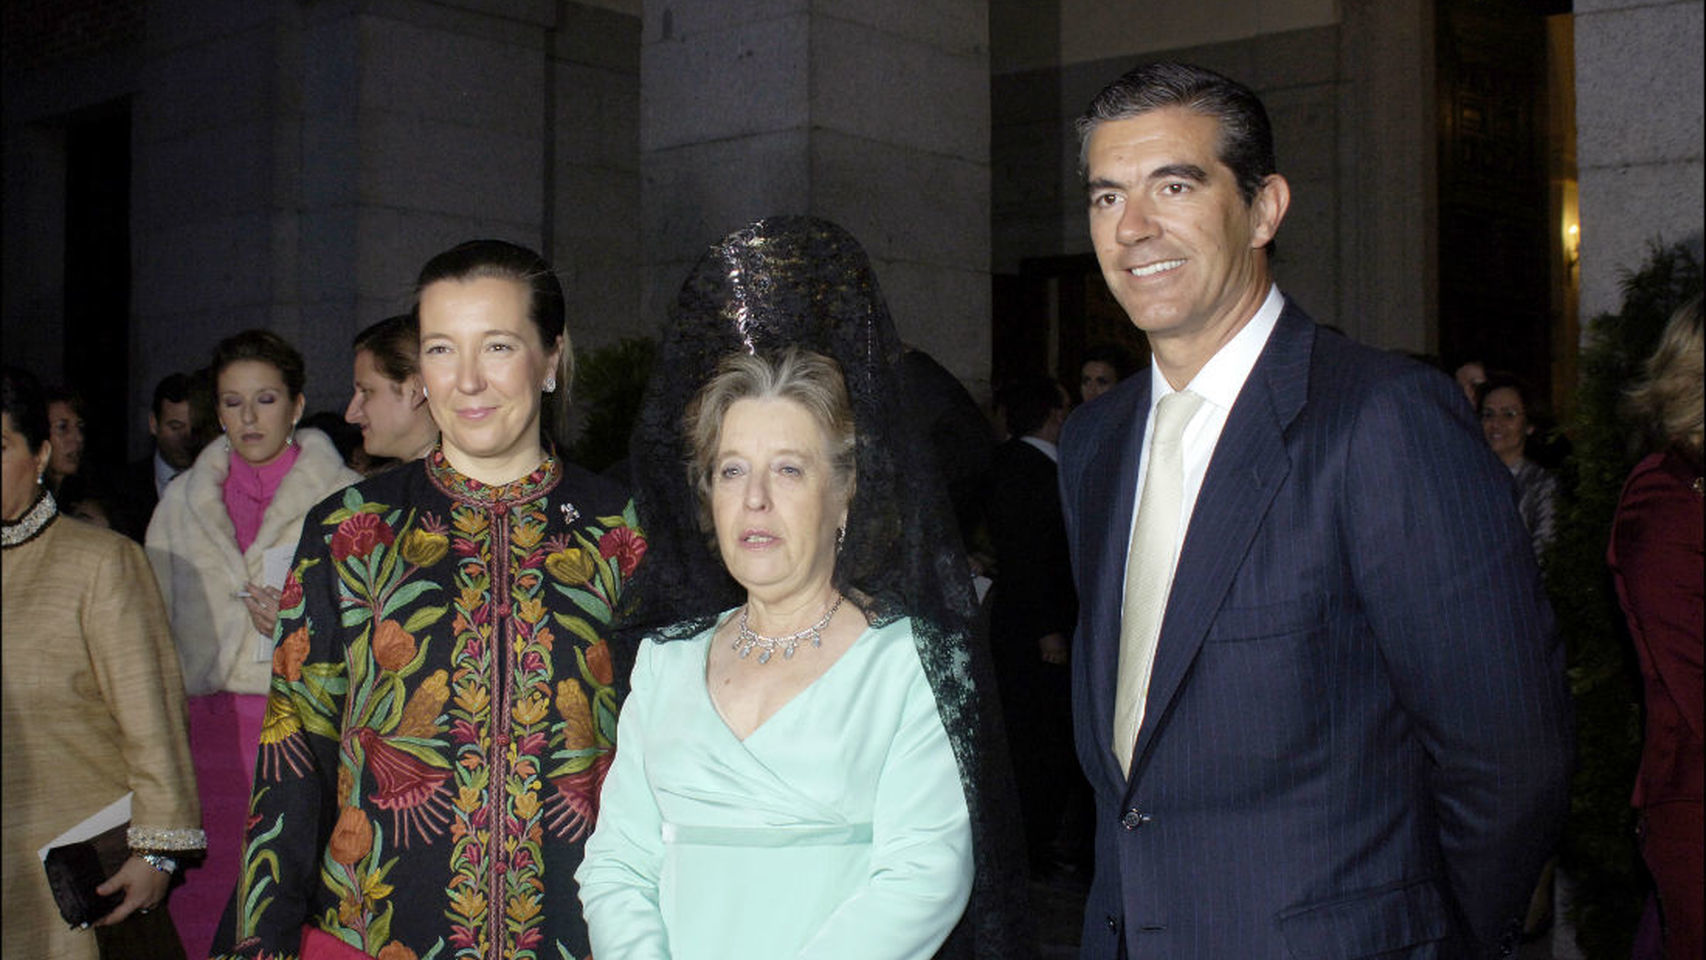 Inés de Borbón Dos Sicilias y Borbón, en el centro, junto a su hija Cristina y el marido de ésta, Pablo López-Quesada.